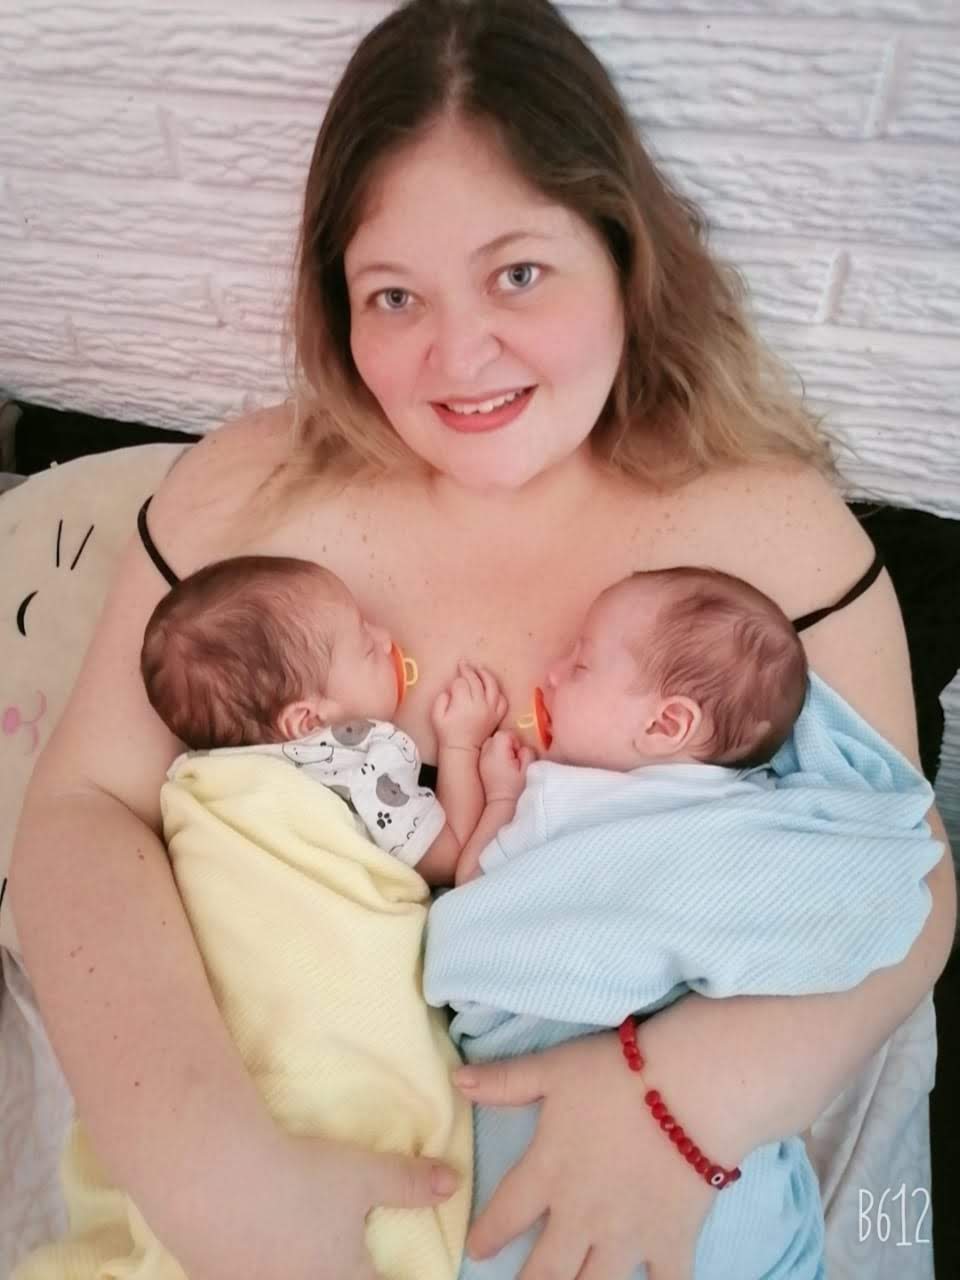 un-embarazo-con-fiv-ingenes-instituto-mama-ingenes-cisne-con-sus-dos-bebes-dormidos-nacidos-via-fecundacion-in-vitro